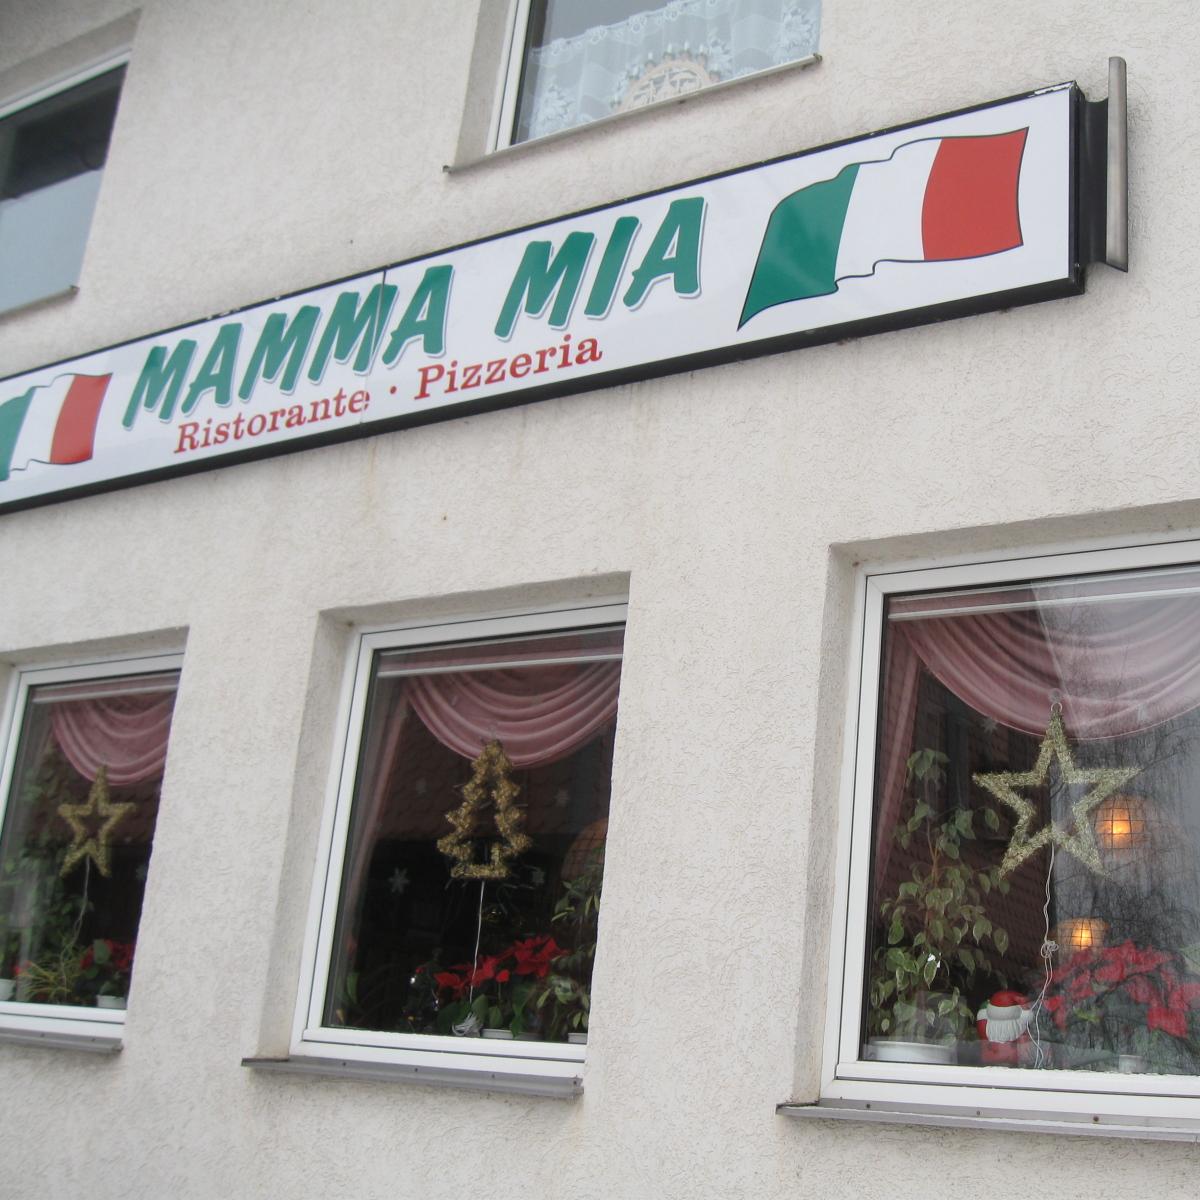 Restaurant "Ristorante Pizzeria Mamma Mia" in  Harz